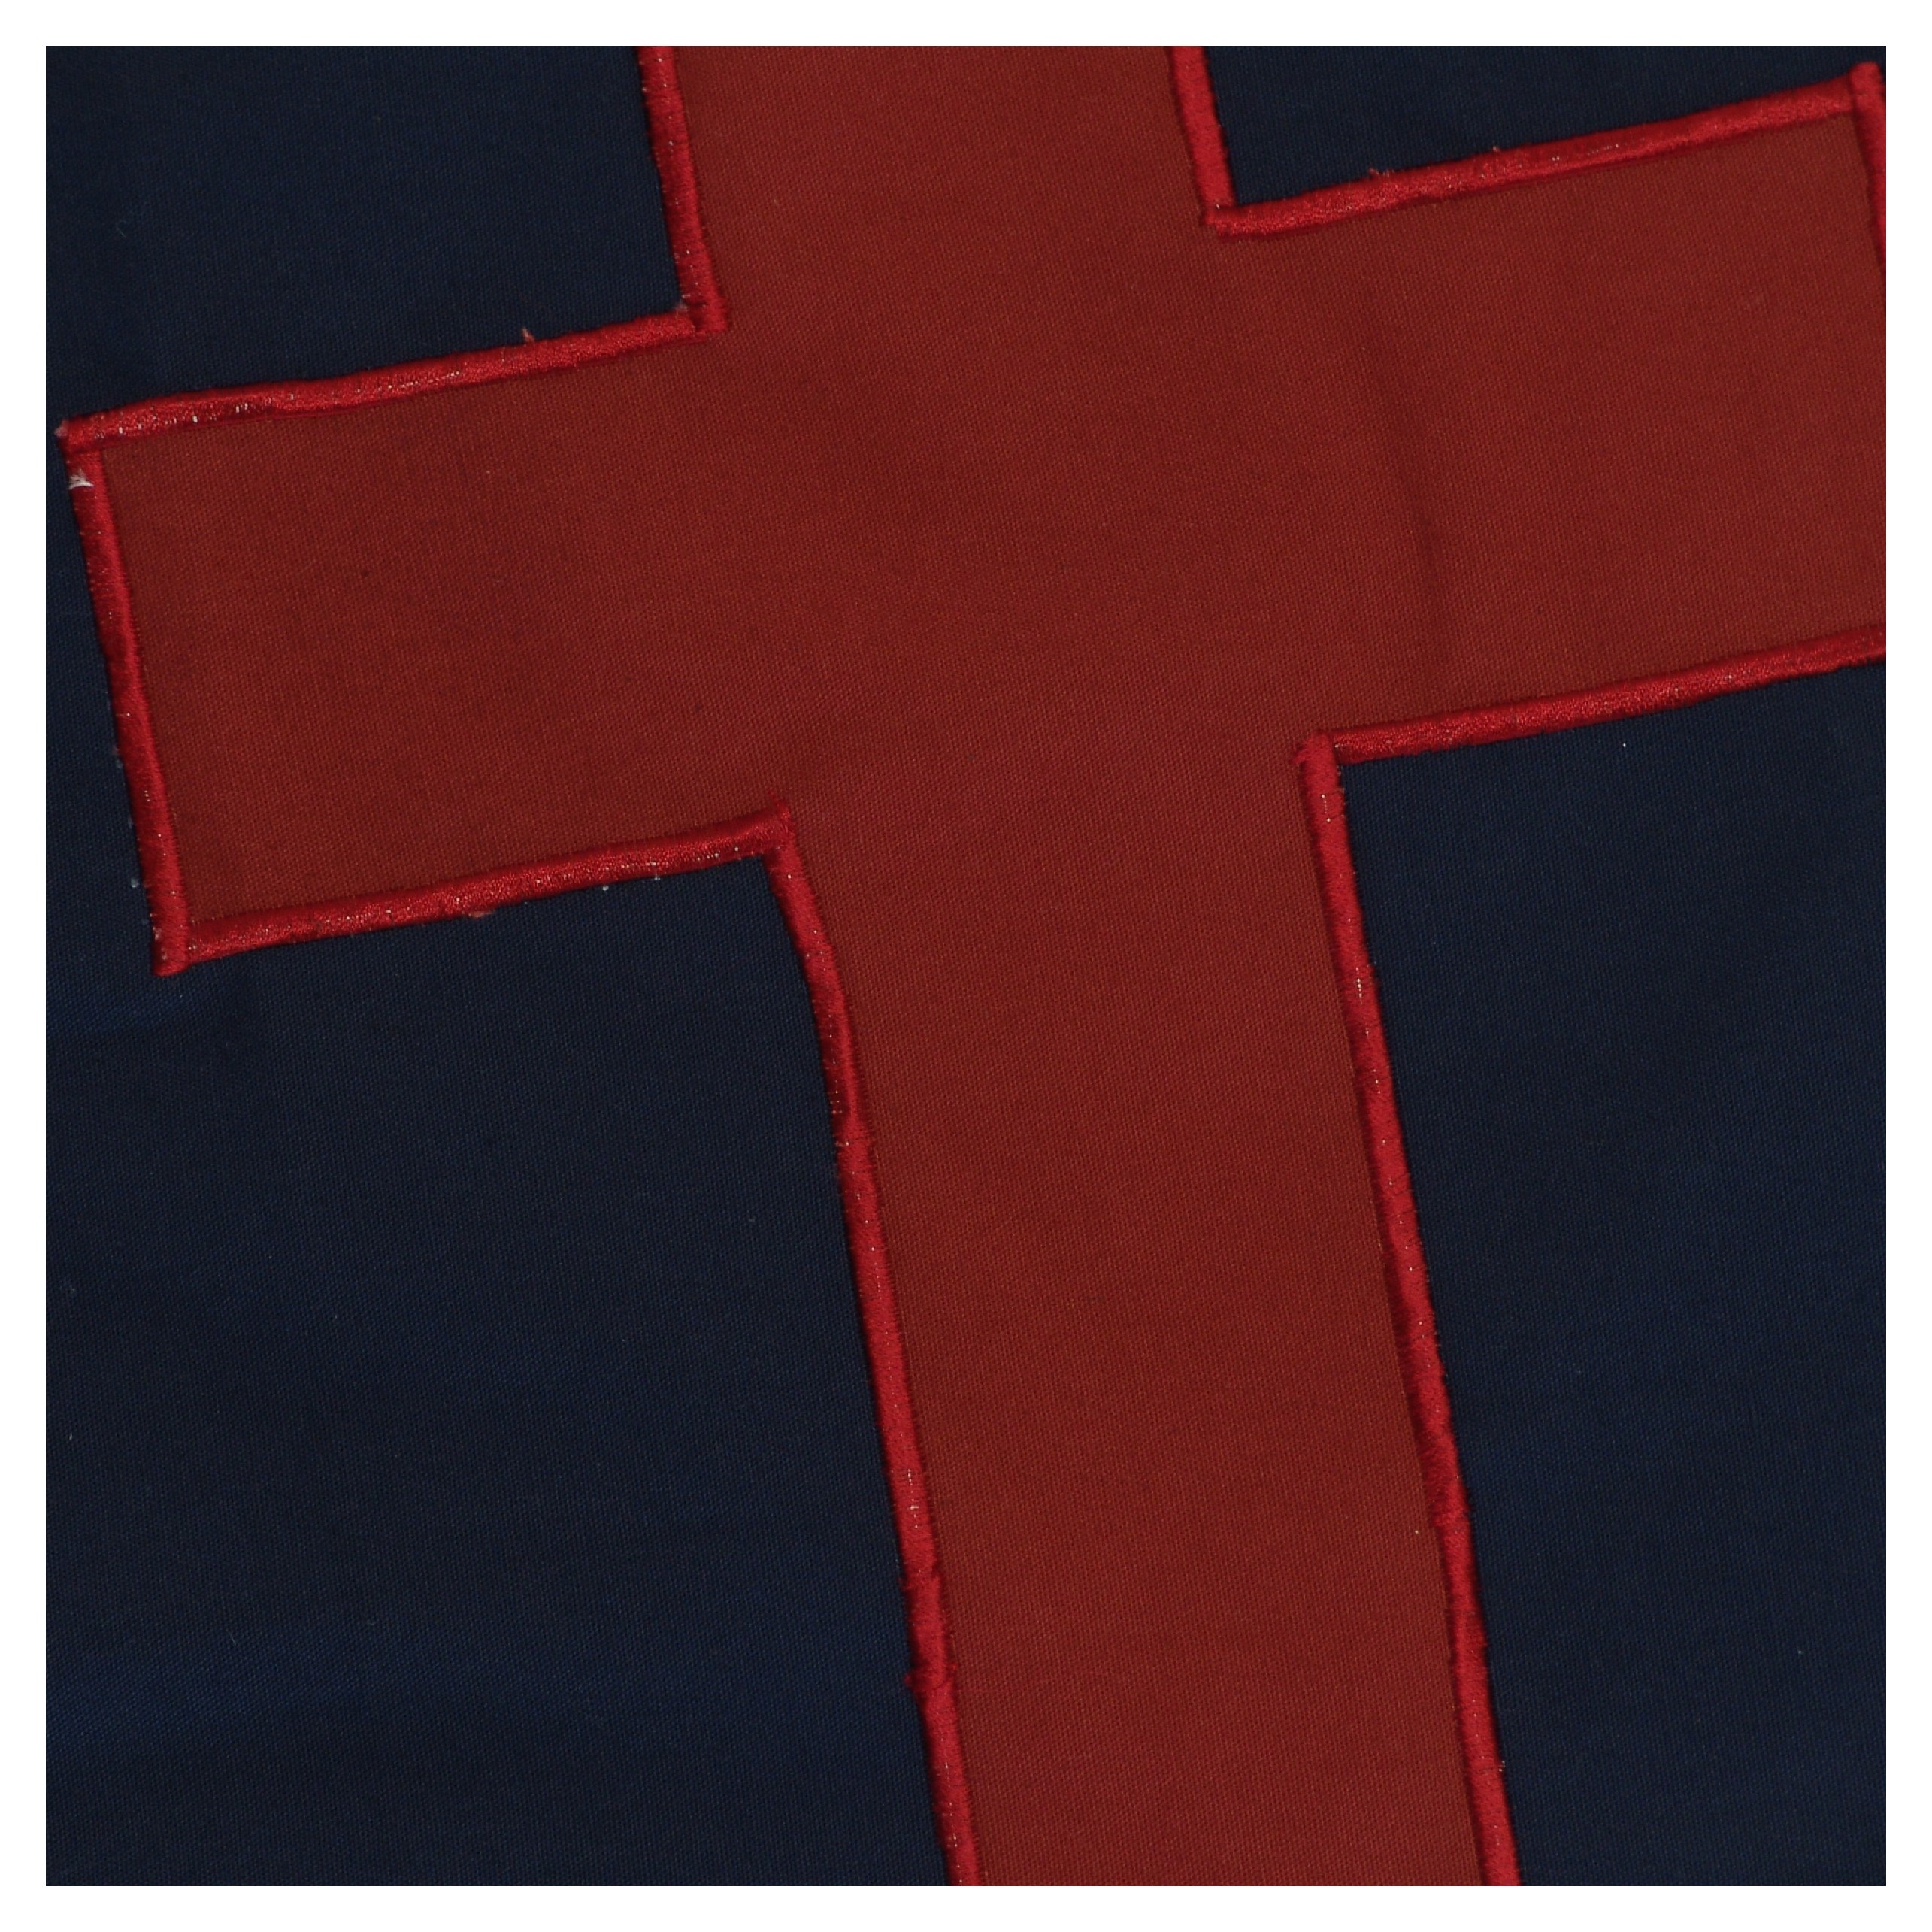 clip art christian flag - photo #20